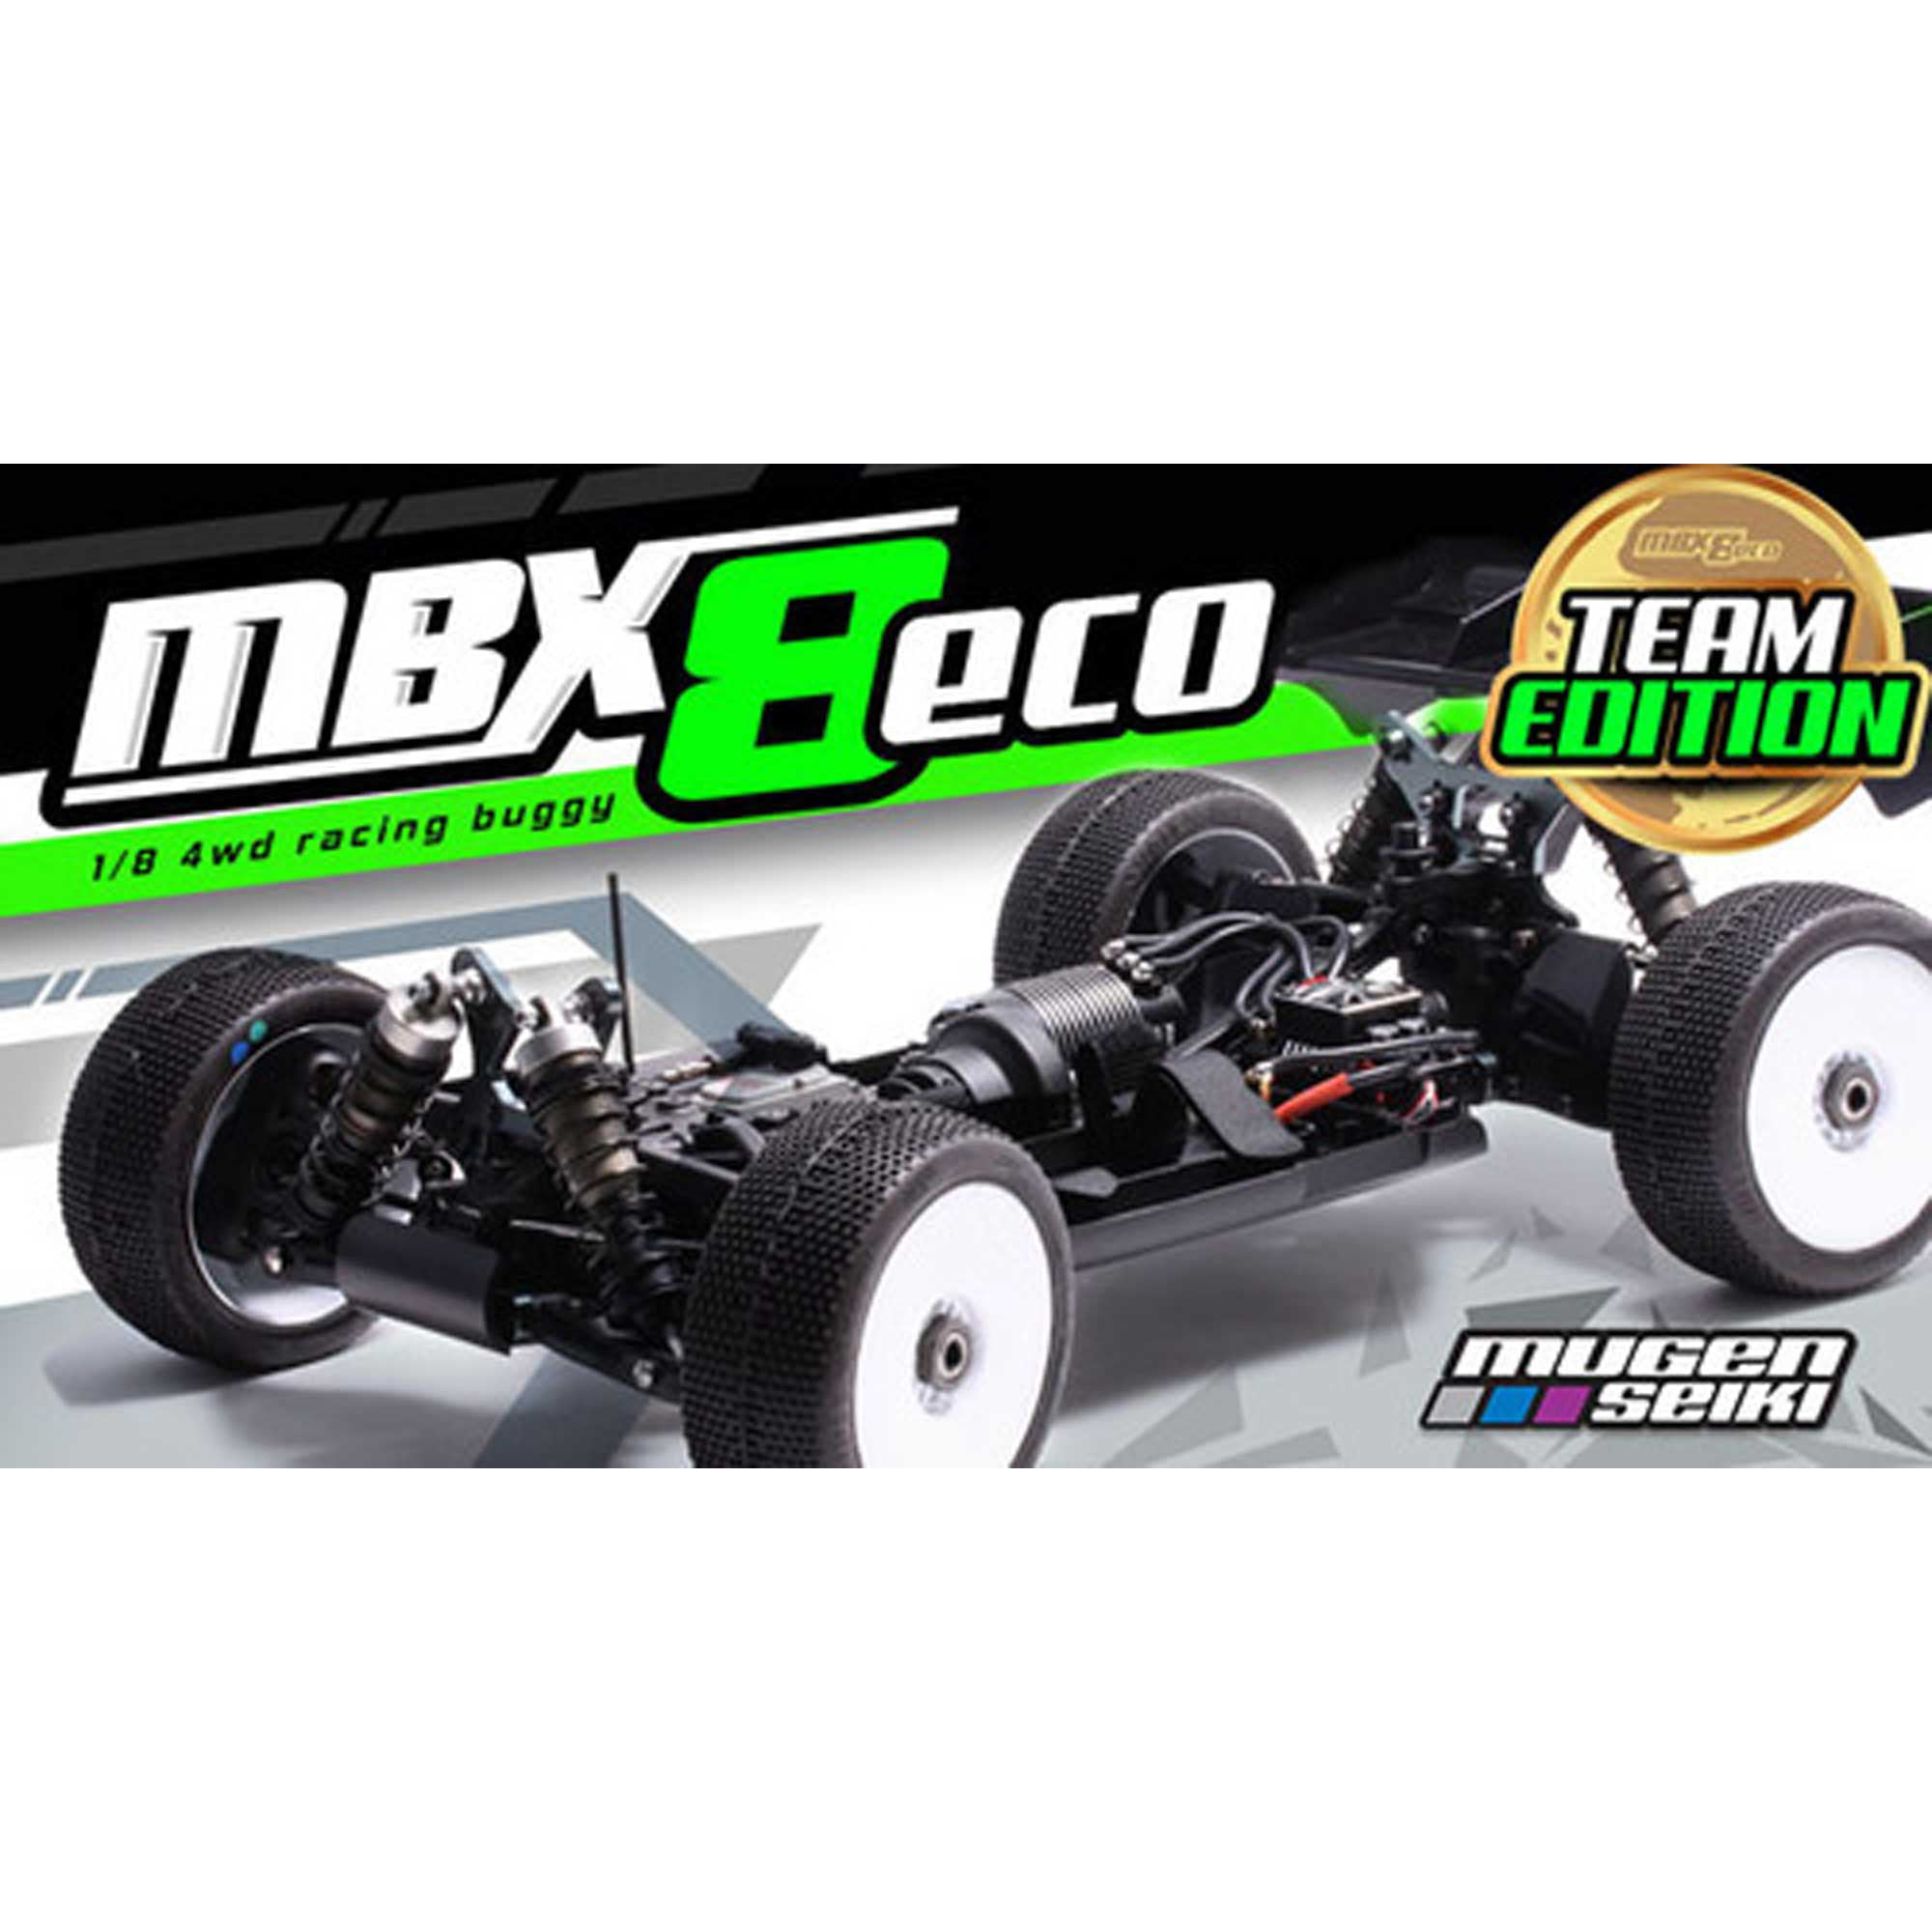 Mugen Seiki Mbx8 & Eco Bearing Kit 24 Pcs 